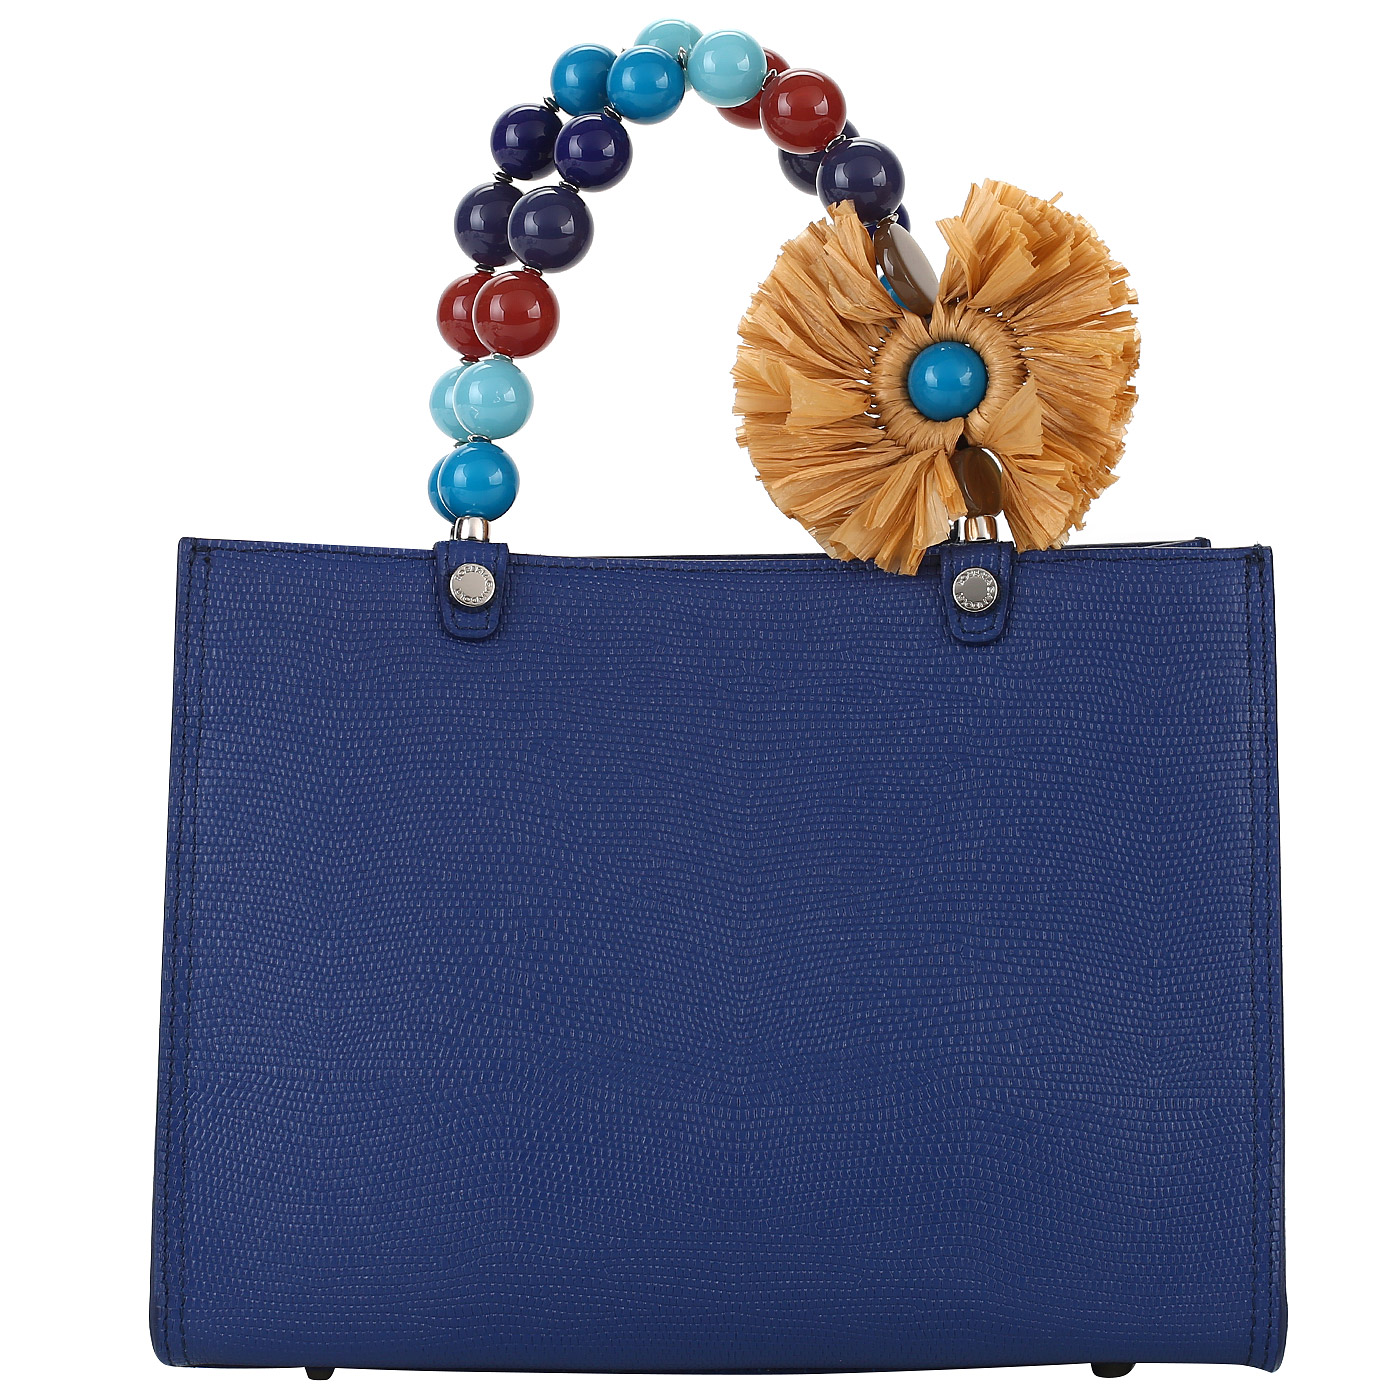 Roberta Gandolfi Женская сумочка из синей кожи